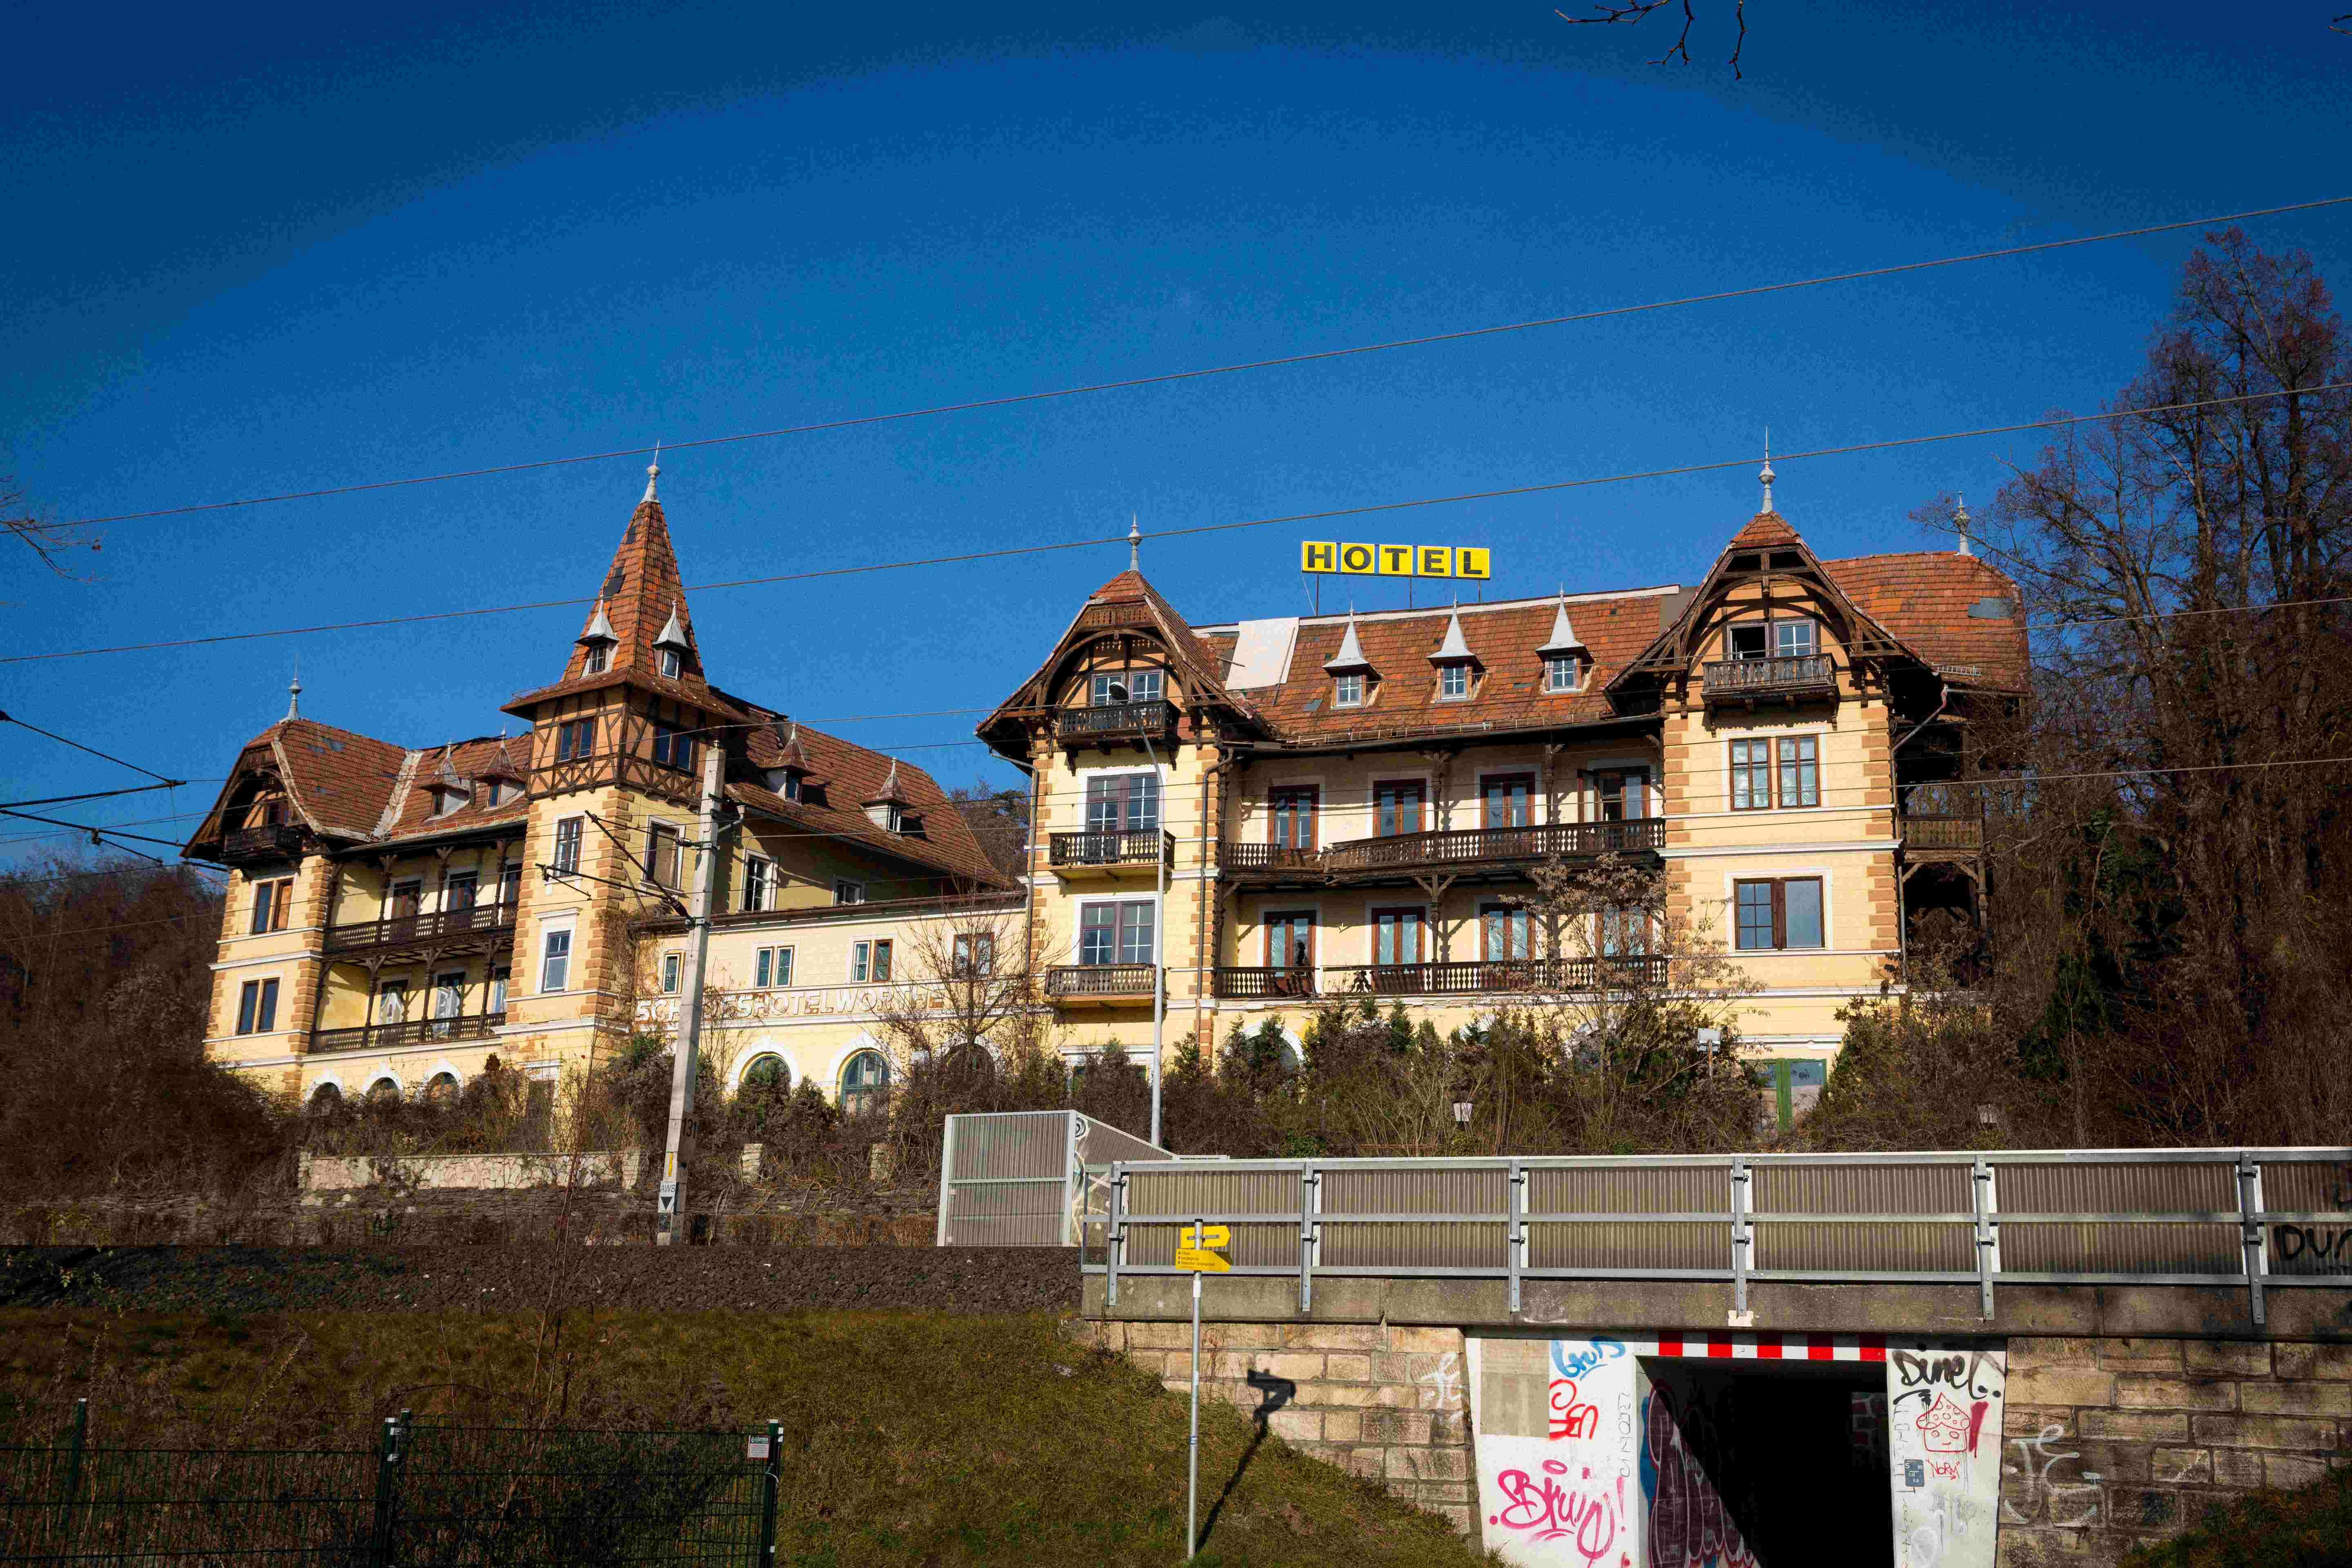 Blick aufs denkmalgeschützte Hotel Wörthersee in der Ostbucht, ein Juwel der Wörtherseearchitektur, das schon seit Jahren verfällt